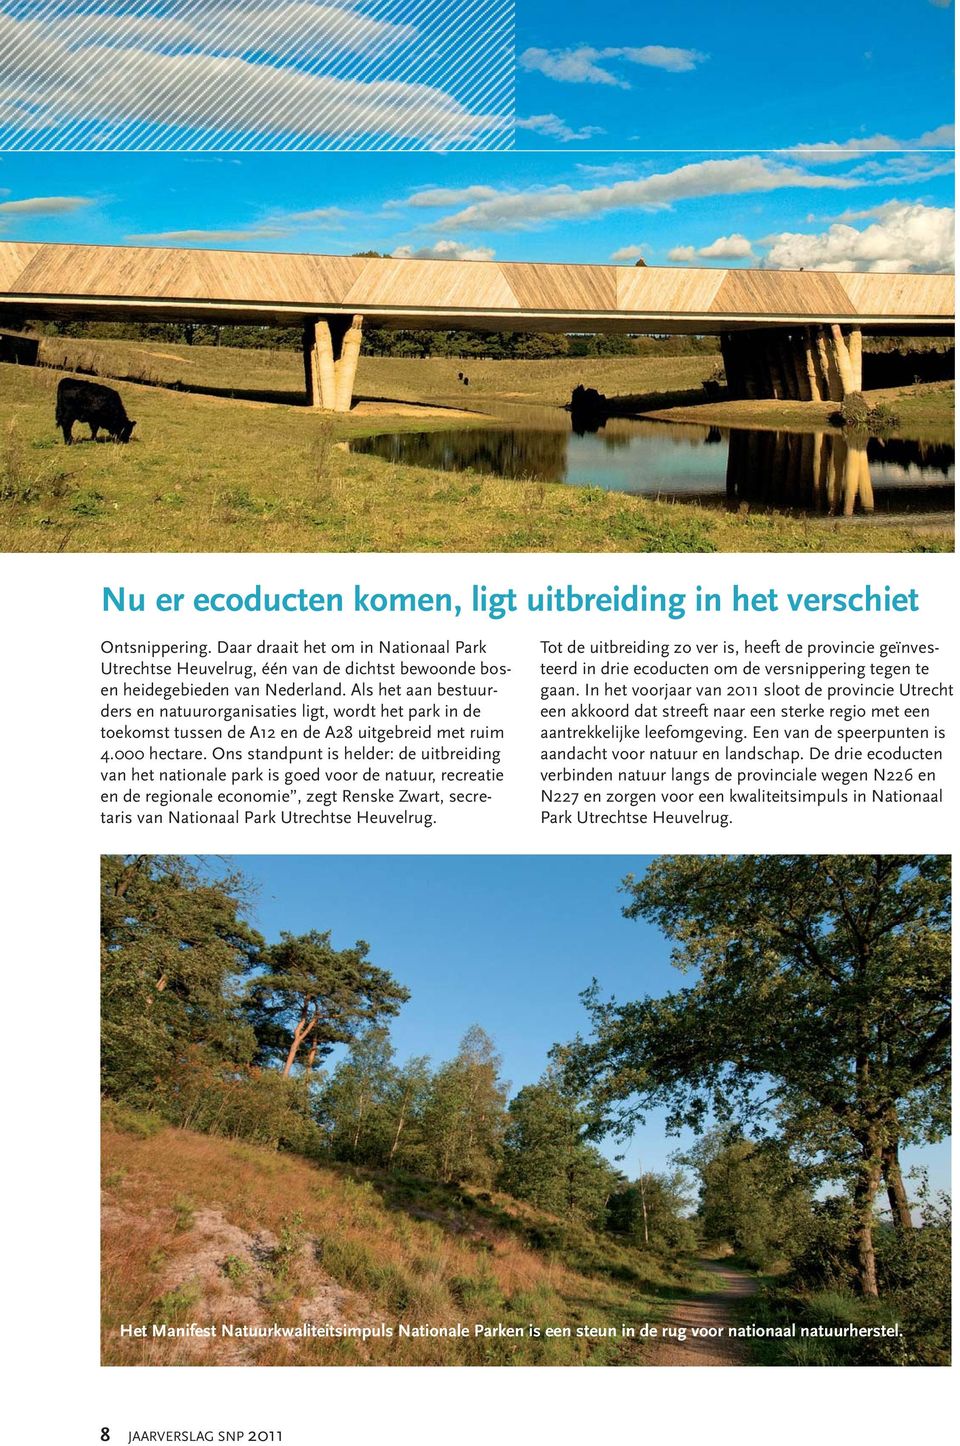 Ons standpunt is helder: de uitbreiding van het nationale park is goed voor de natuur, recreatie en de regionale economie, zegt Renske Zwart, secretaris van Nationaal Park Utrechtse Heuvelrug.